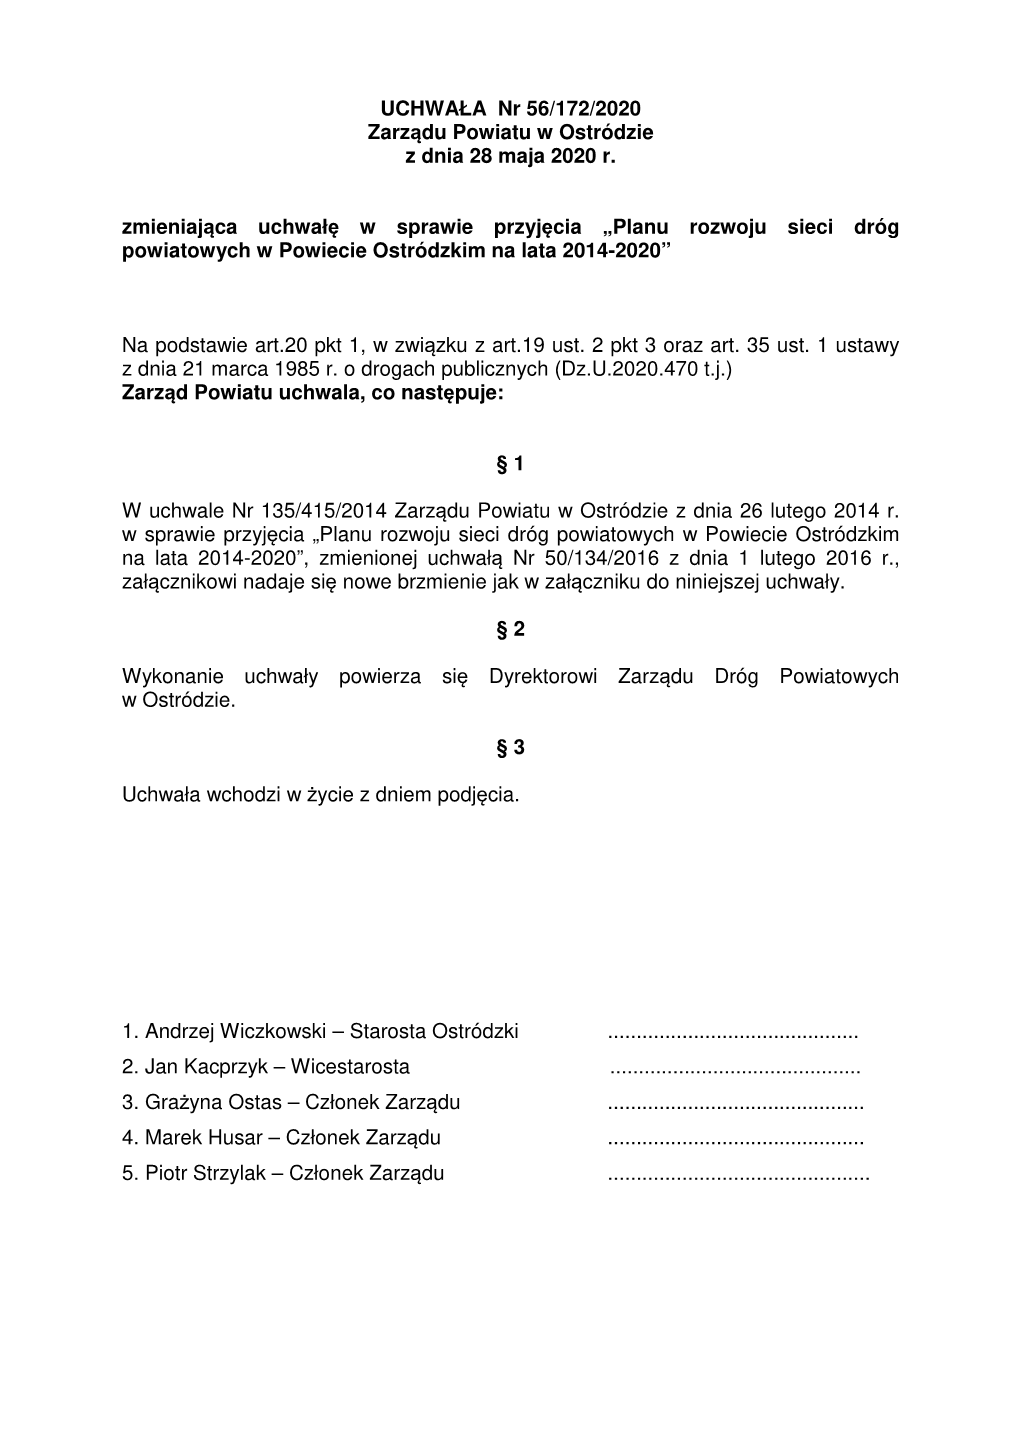 UCHWAŁA Nr 56/172/2020 Zarządu Powiatu W Ostródzie Z Dnia 28 Maja